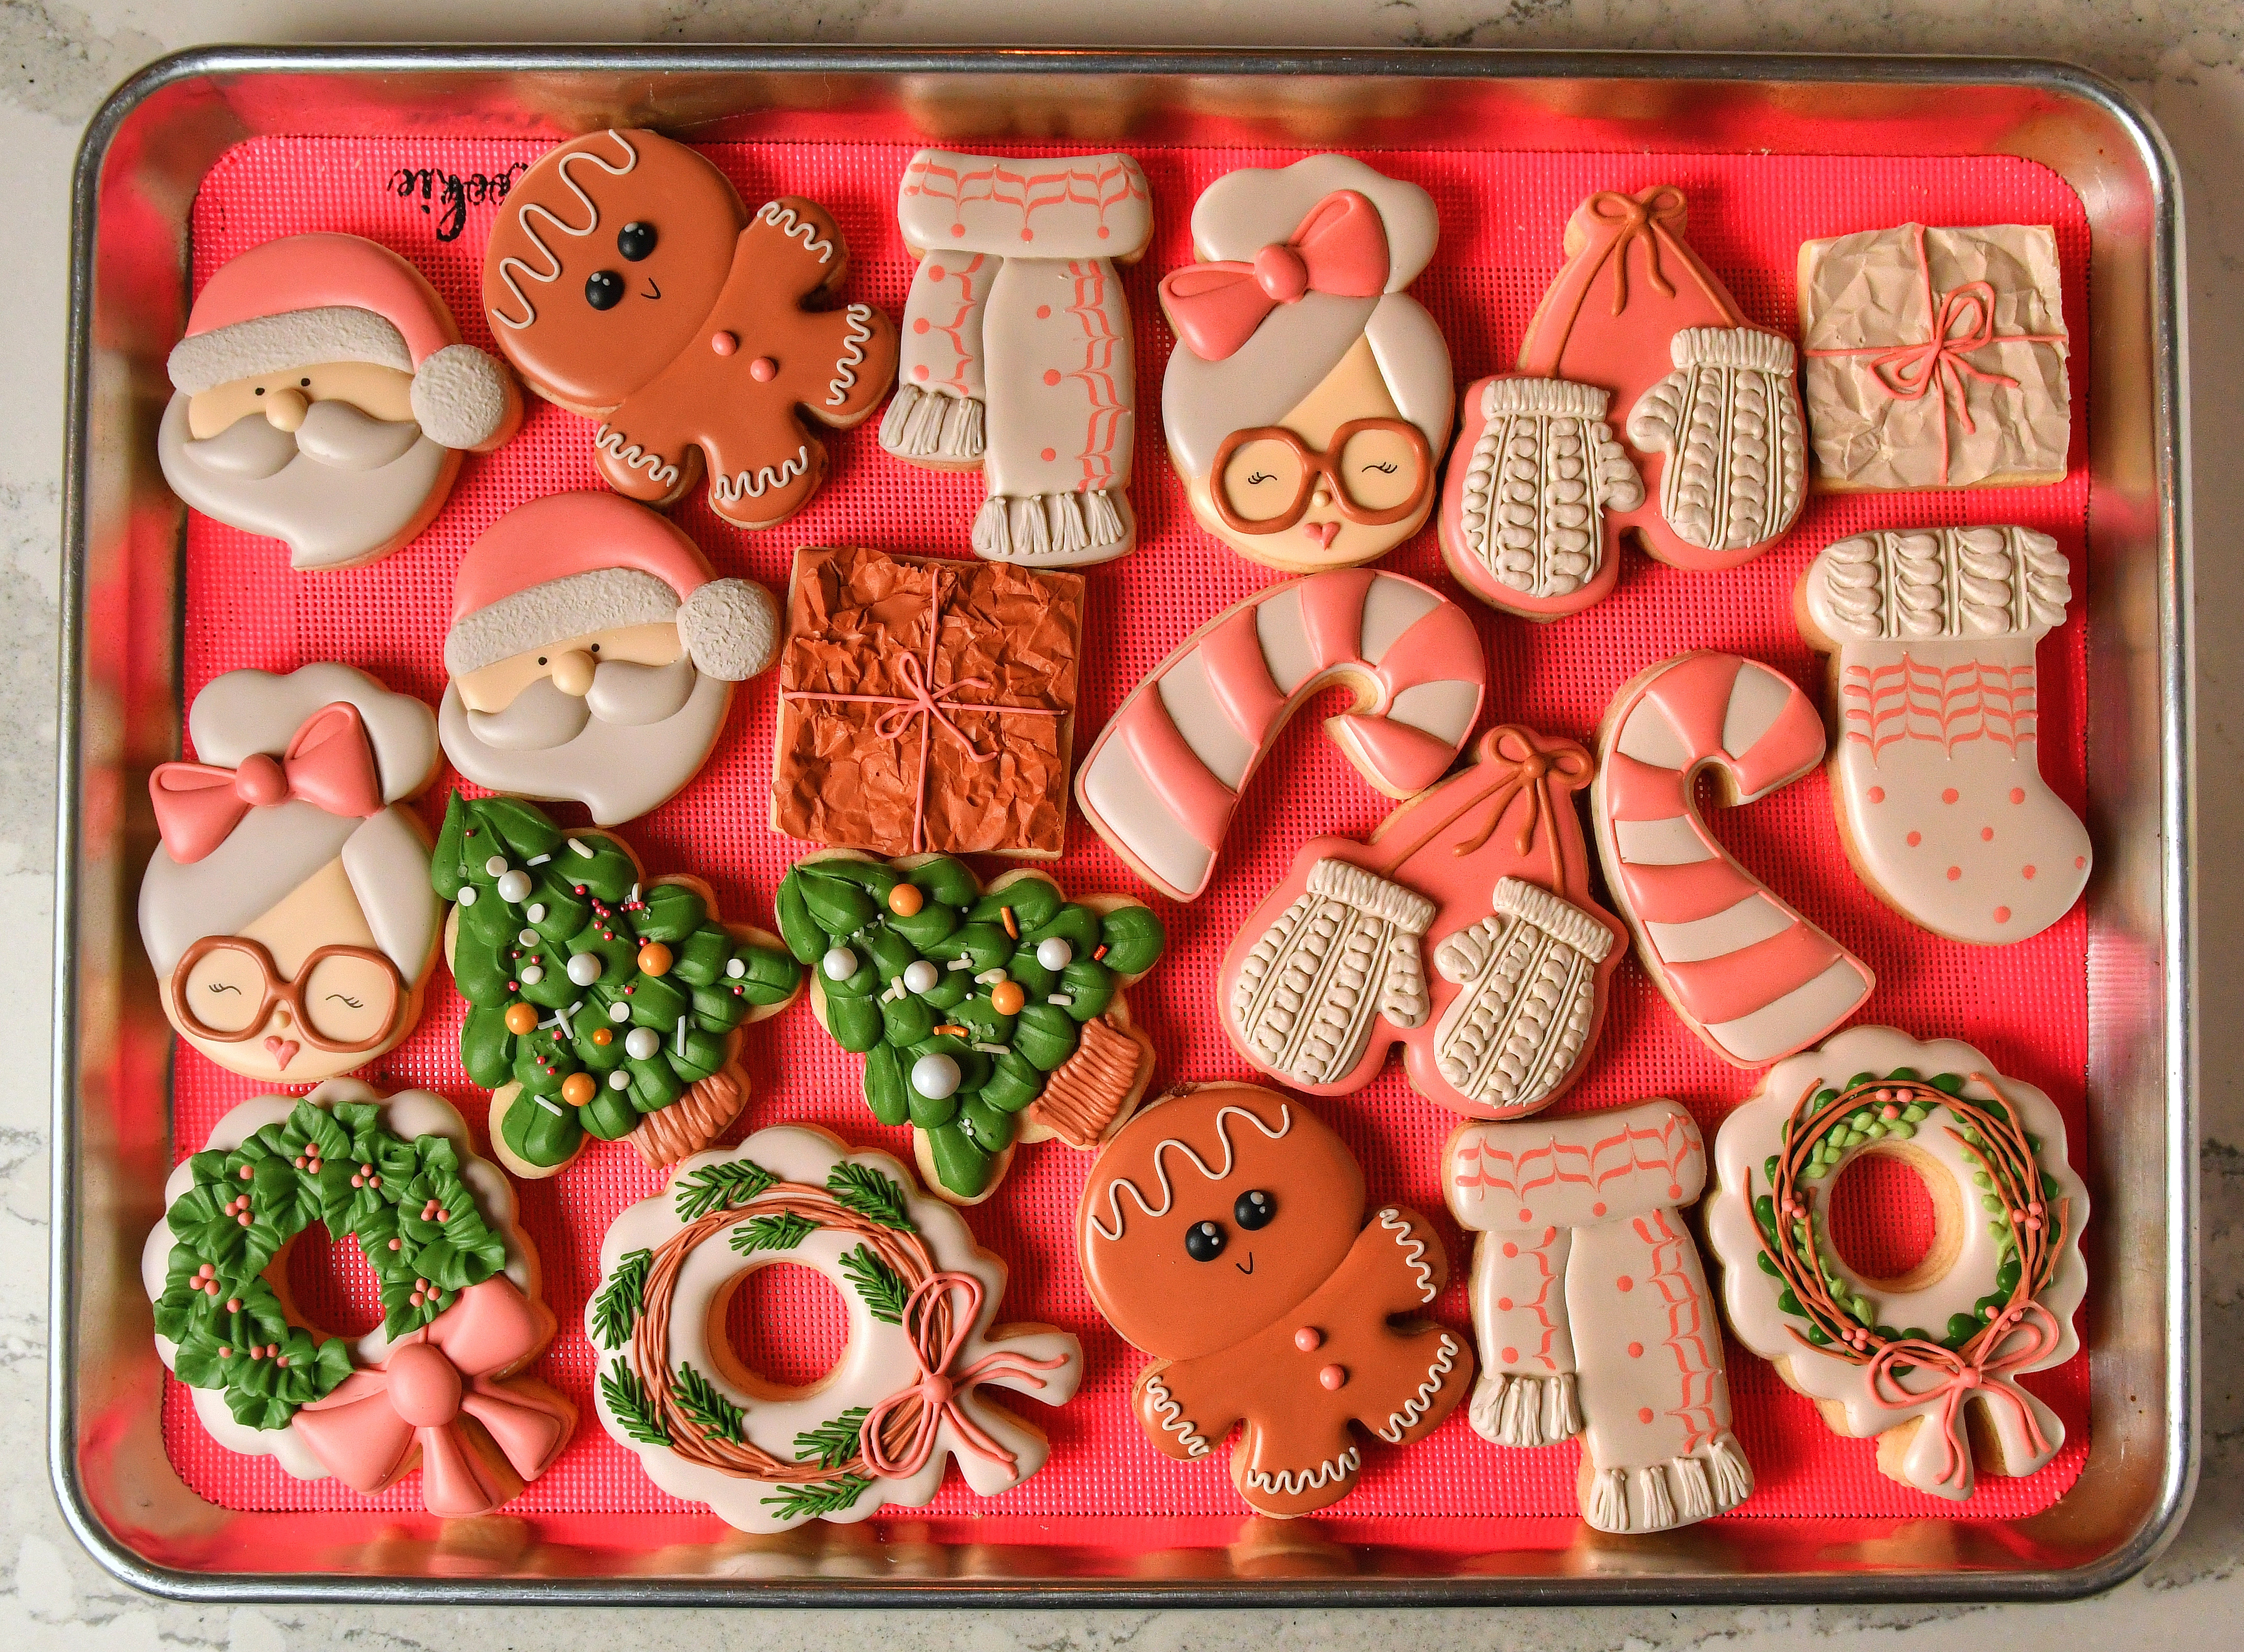 Gingerbread Cookies on Baking Sheet Ornament - Vertical, Mitten